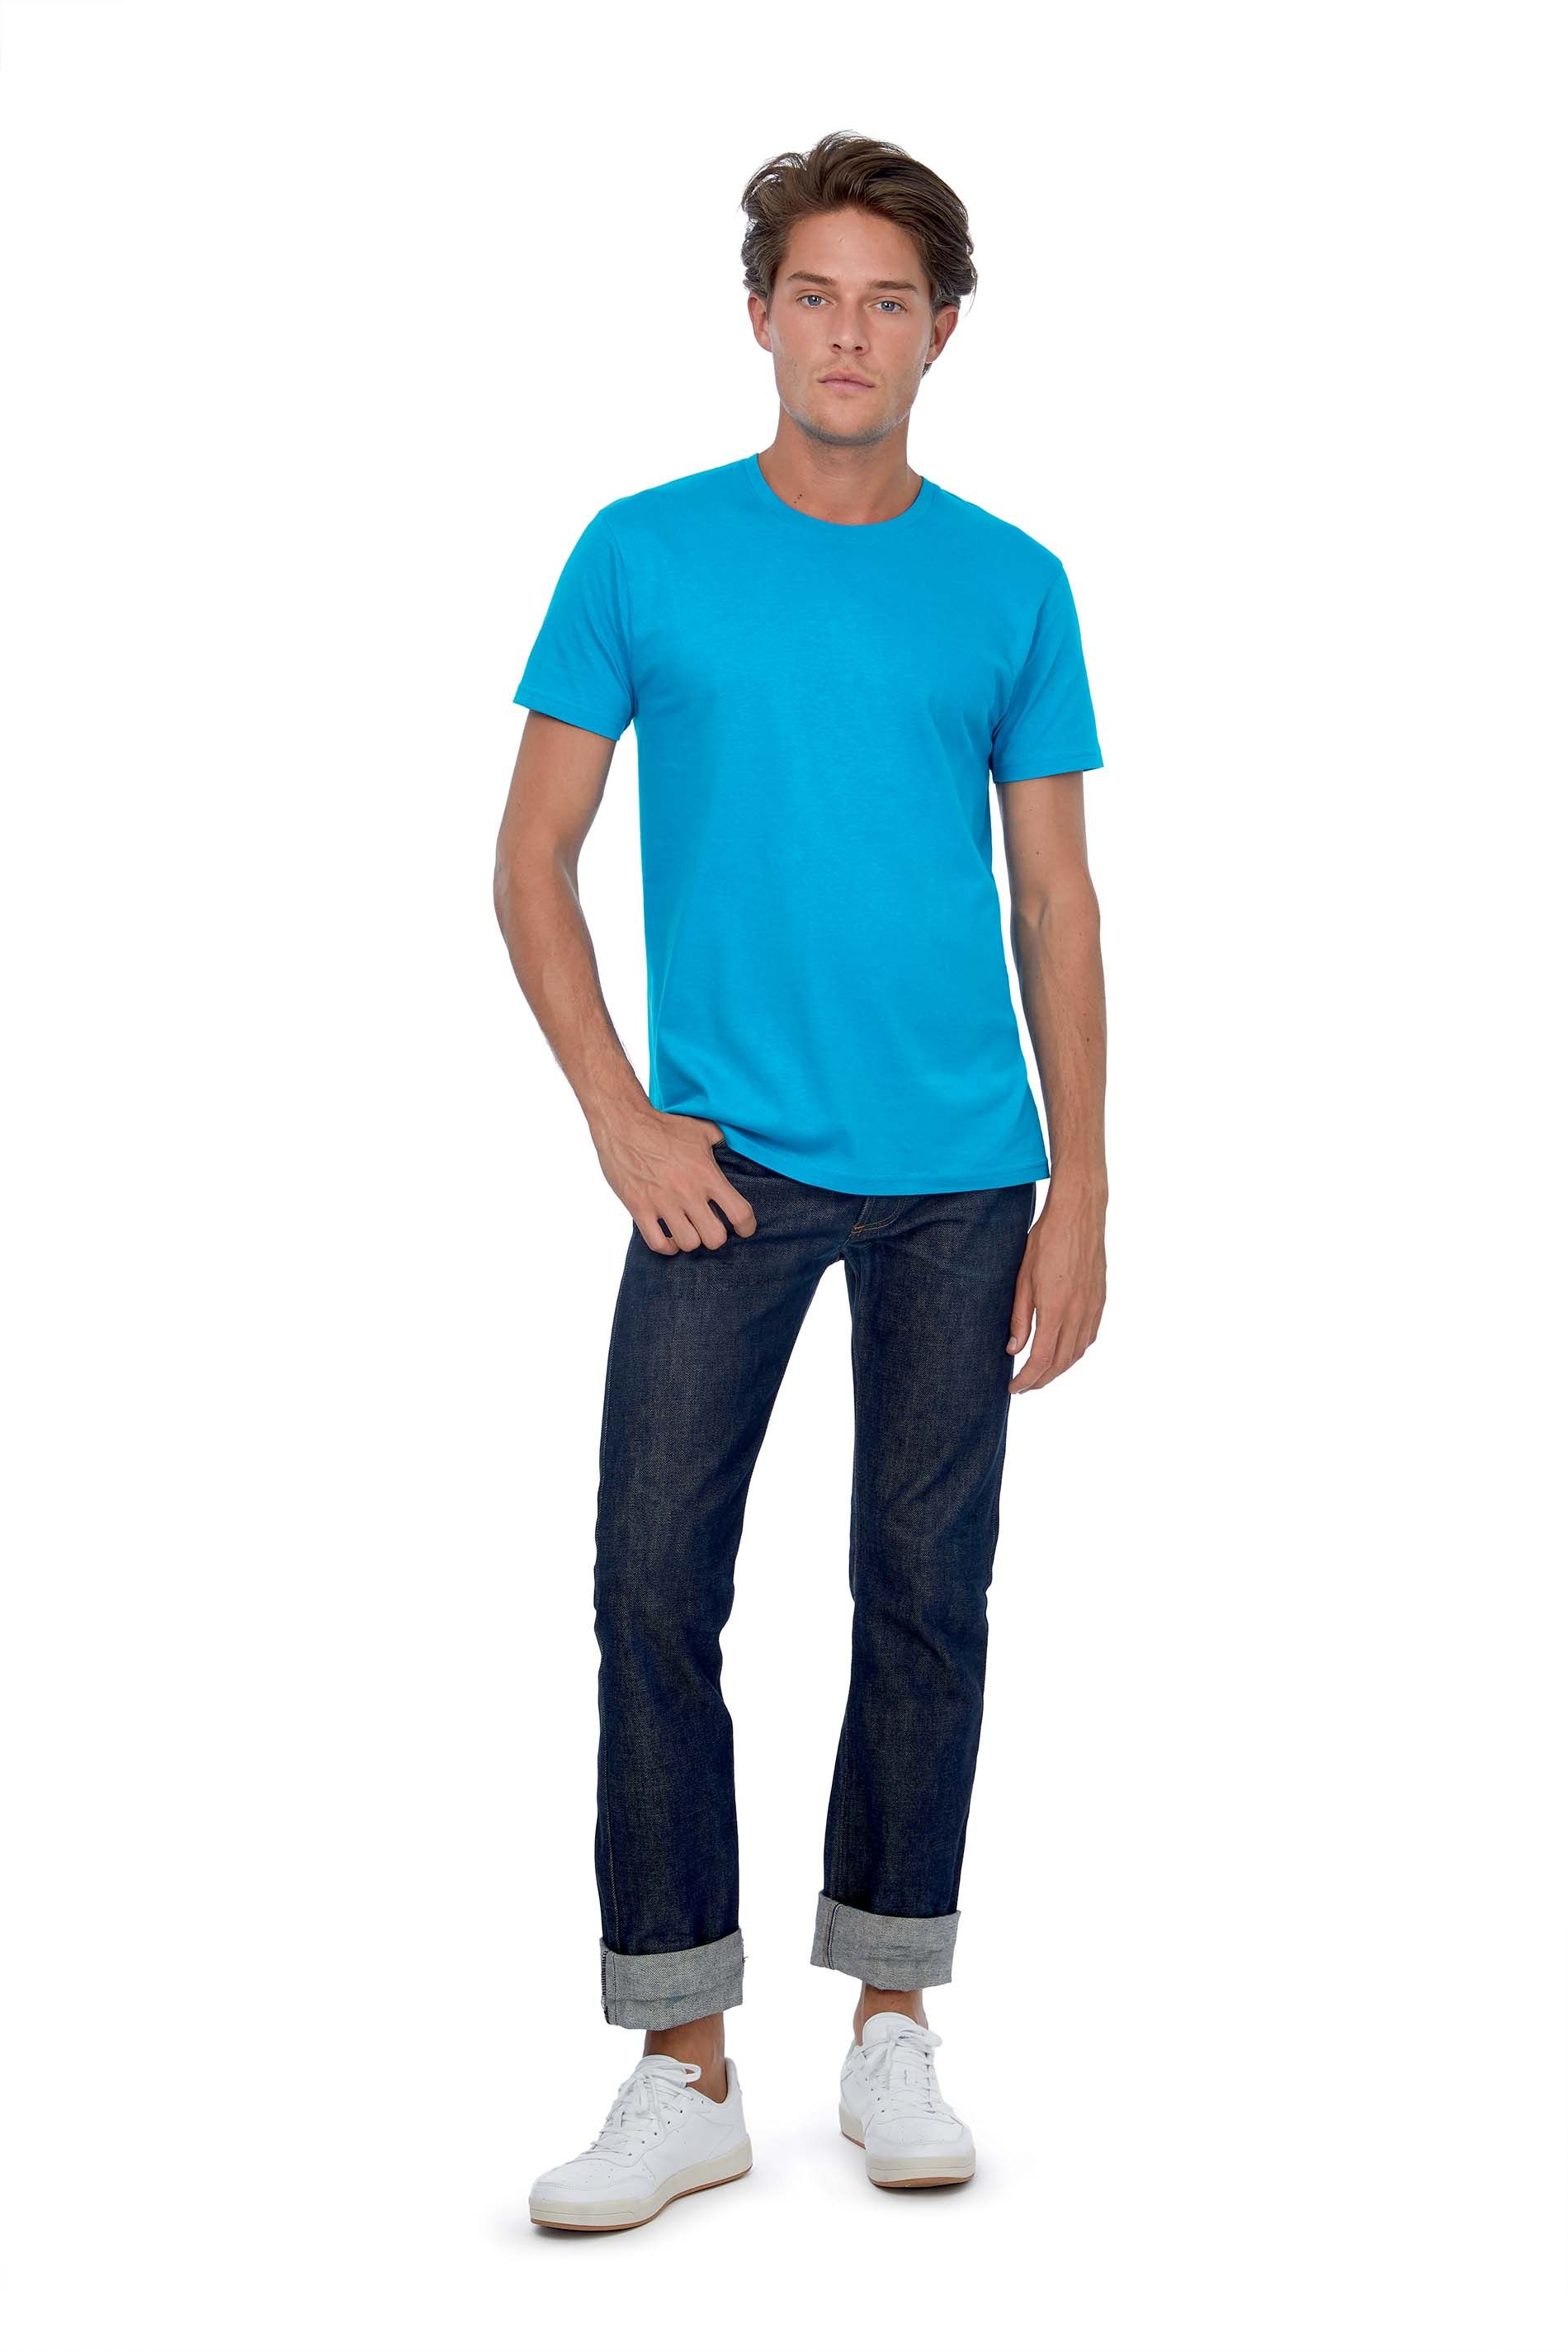 T-shirts hommes personnalisables en ligne chez Textile Direct